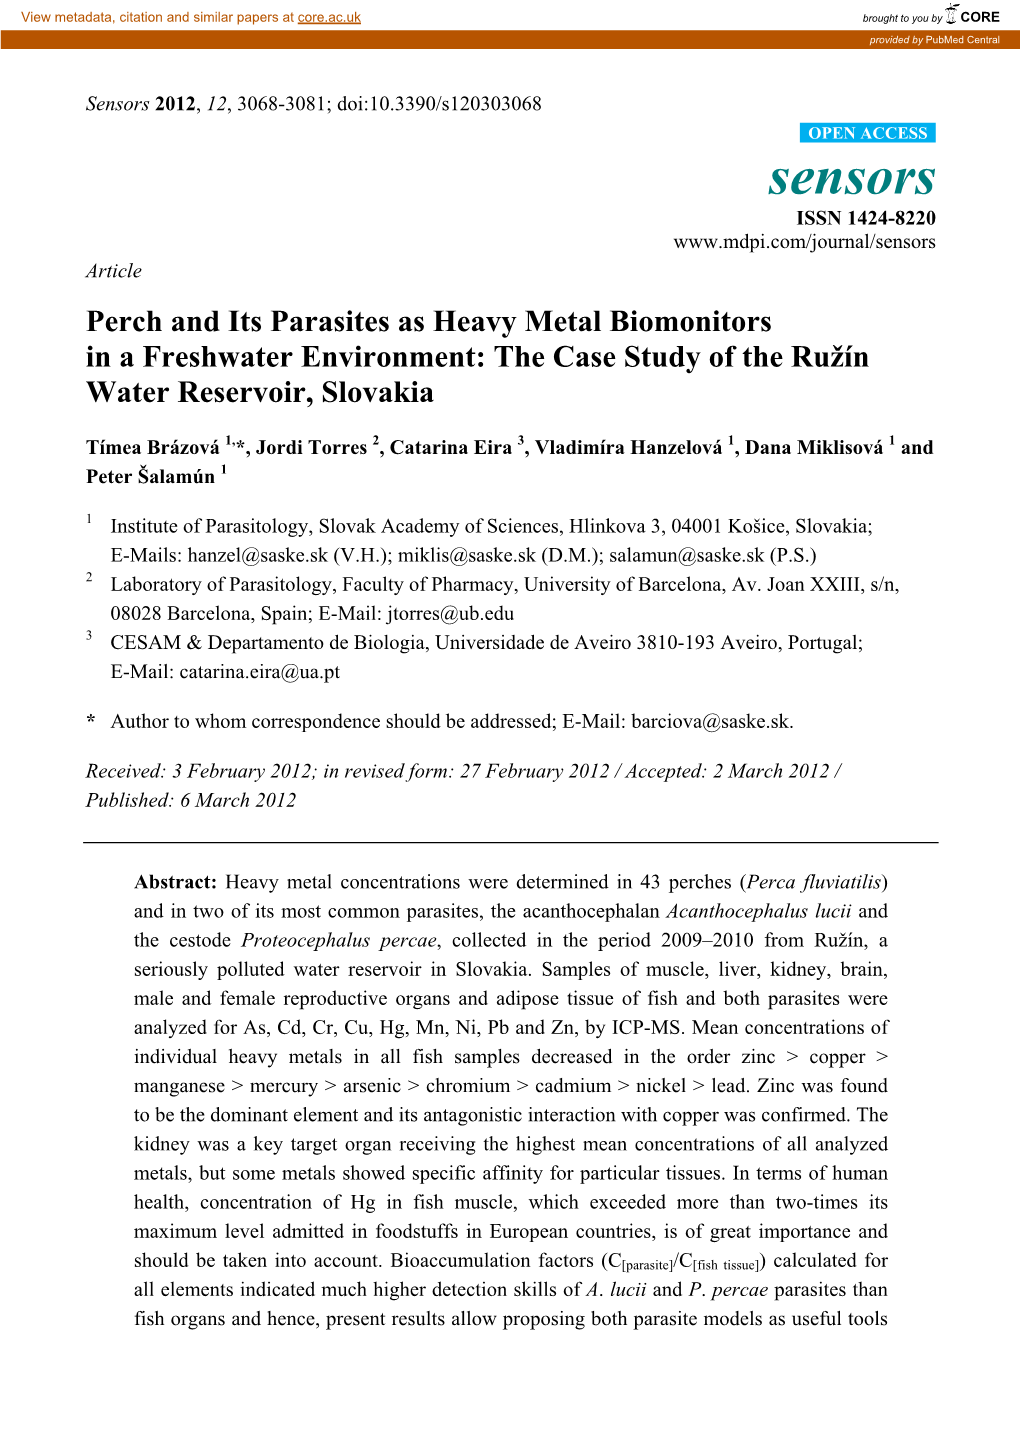 The Case Study of the Ružín Water Reservoir, Slovakia